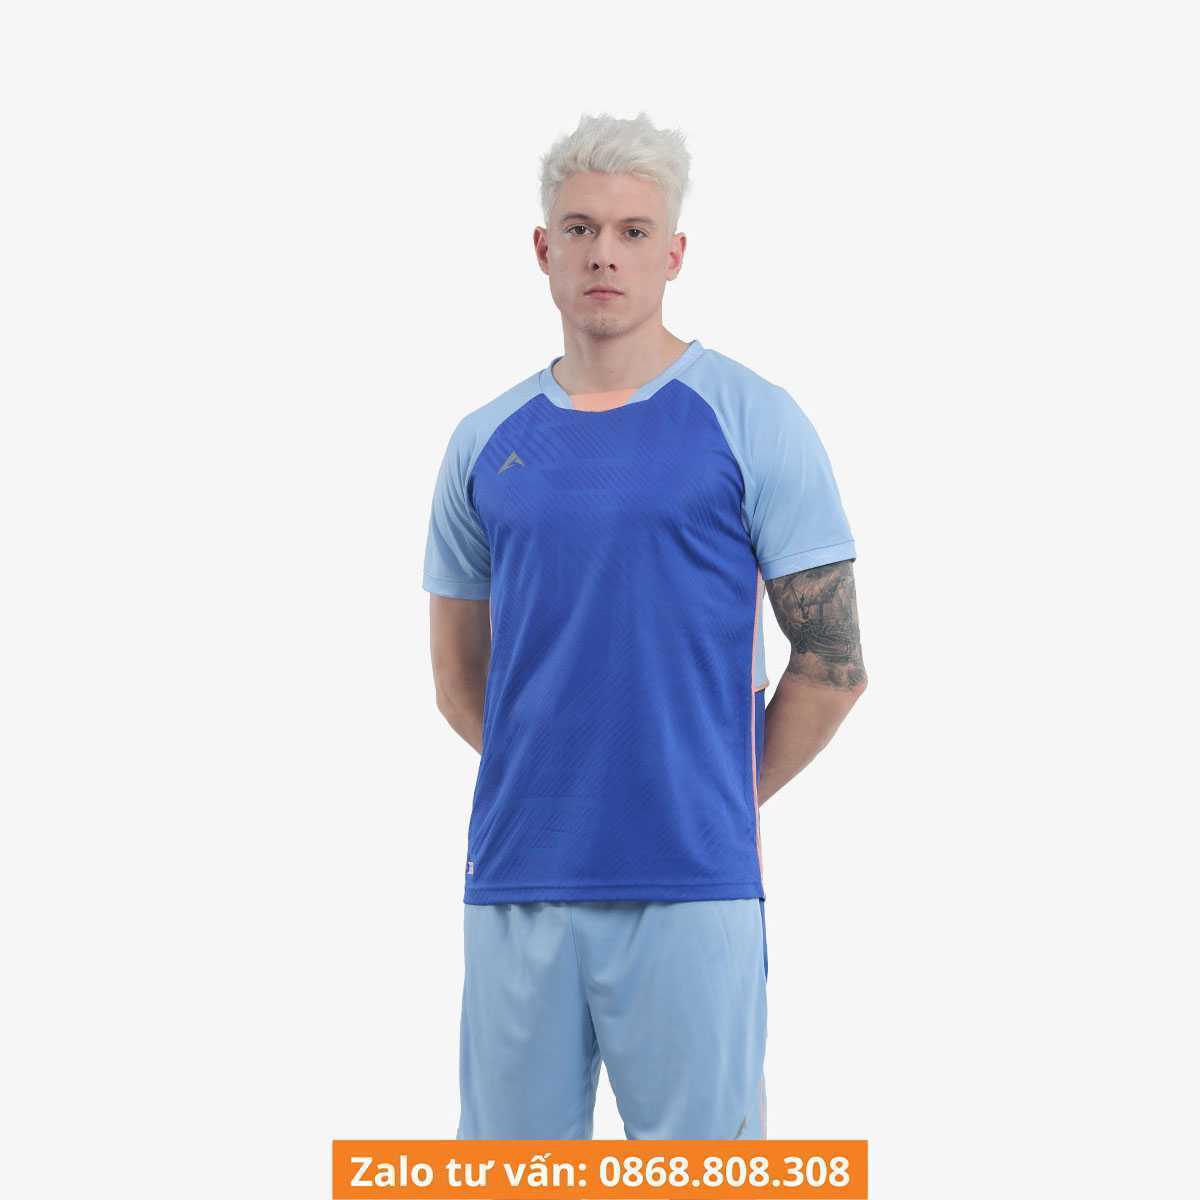 Bộ quần áo đá bóng Kaiwin RIDER mới chính hãng giá rẻ vải thun nhiều màu xanh biển 1